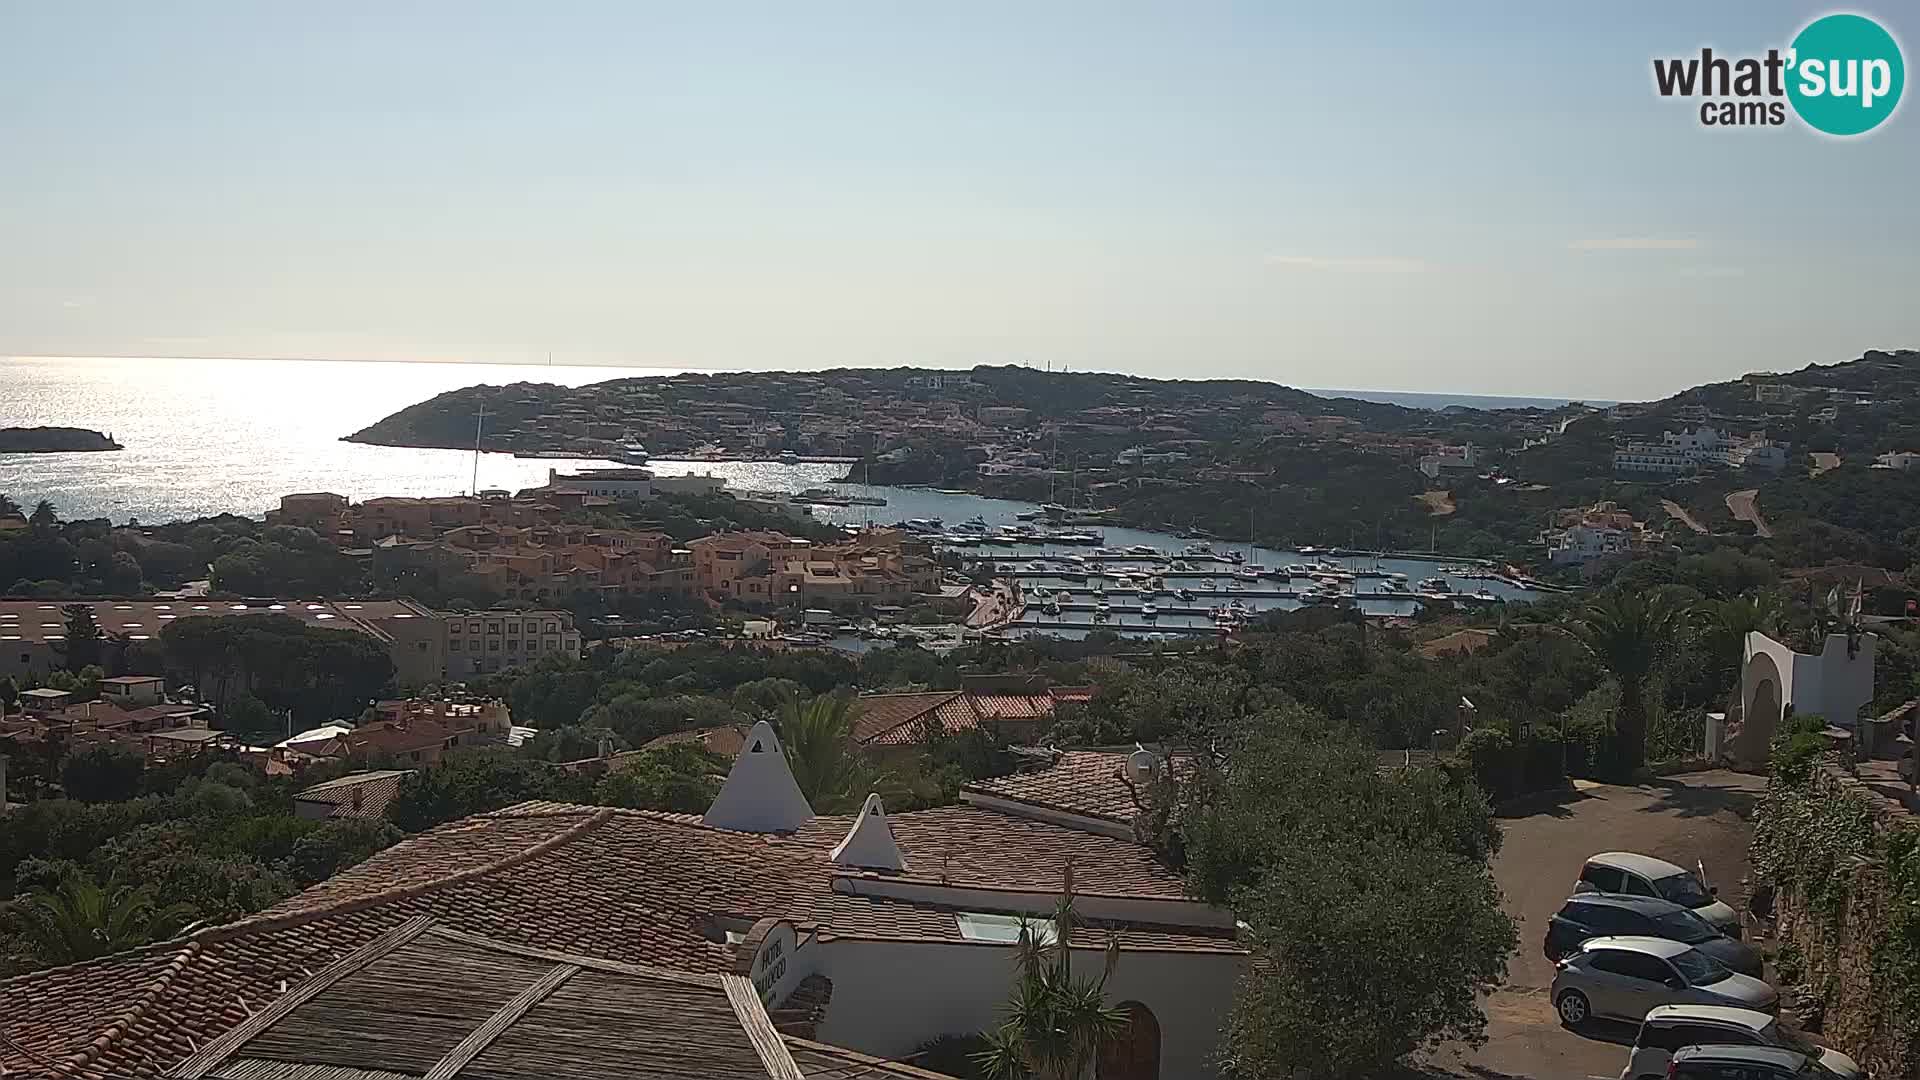 The beautiful Porto Cervo livecam C. Smeralda – Sardinia – Italy